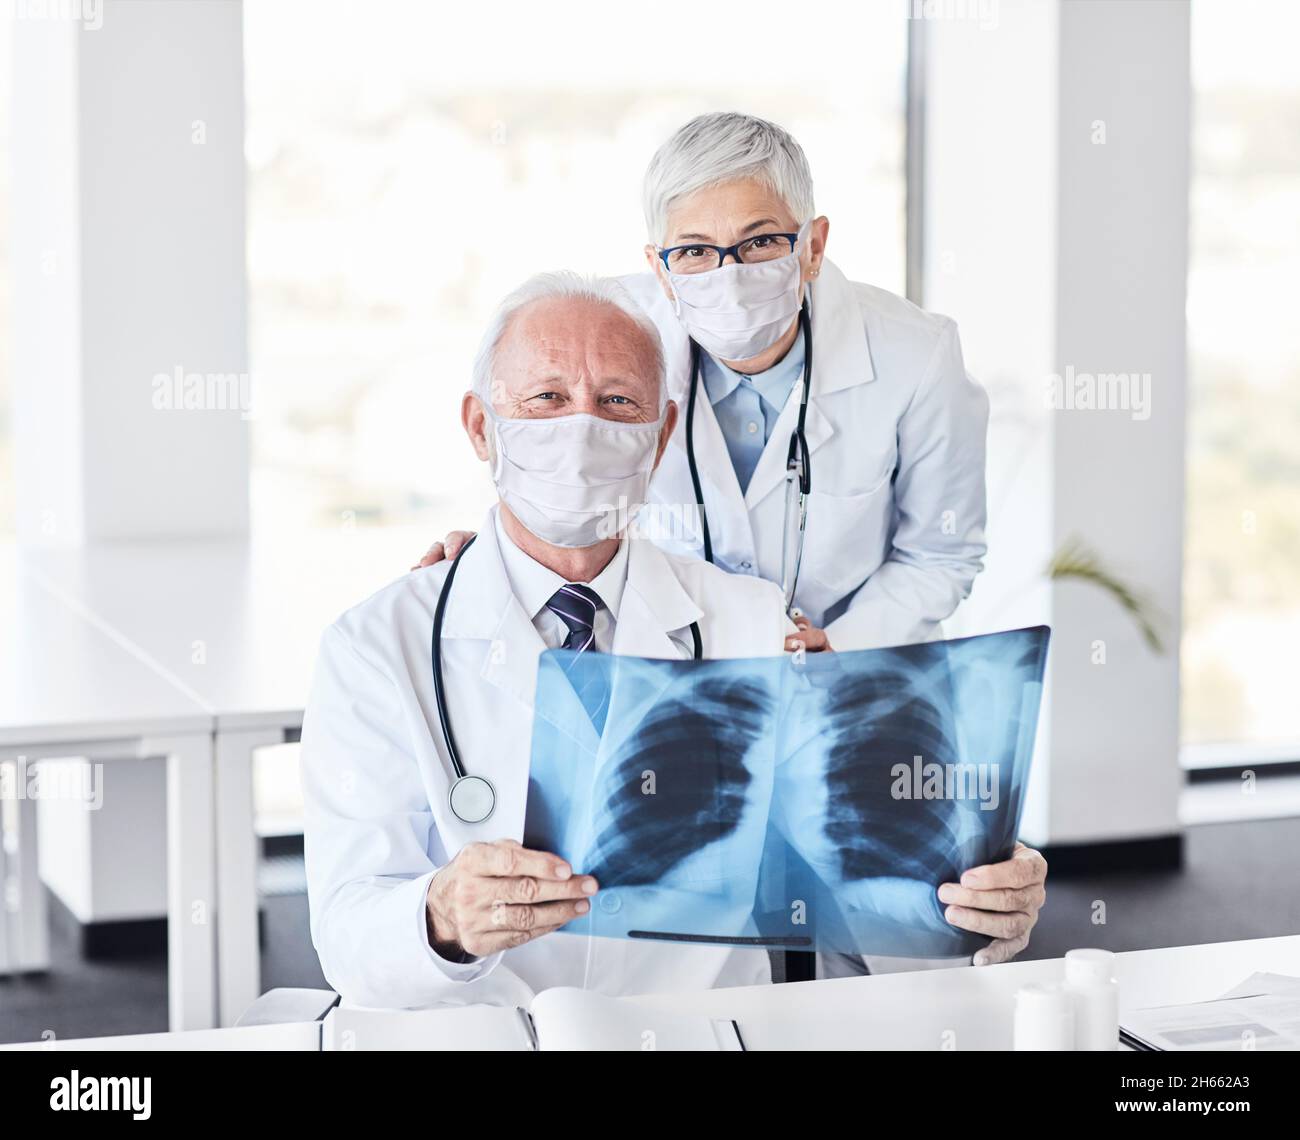 Leitender Arzt Röntgen-Scan Medizin Gesundheitswesen Krankenhaus Virus Maske Schutz Corona epidemischen Coronavirus Stockfoto